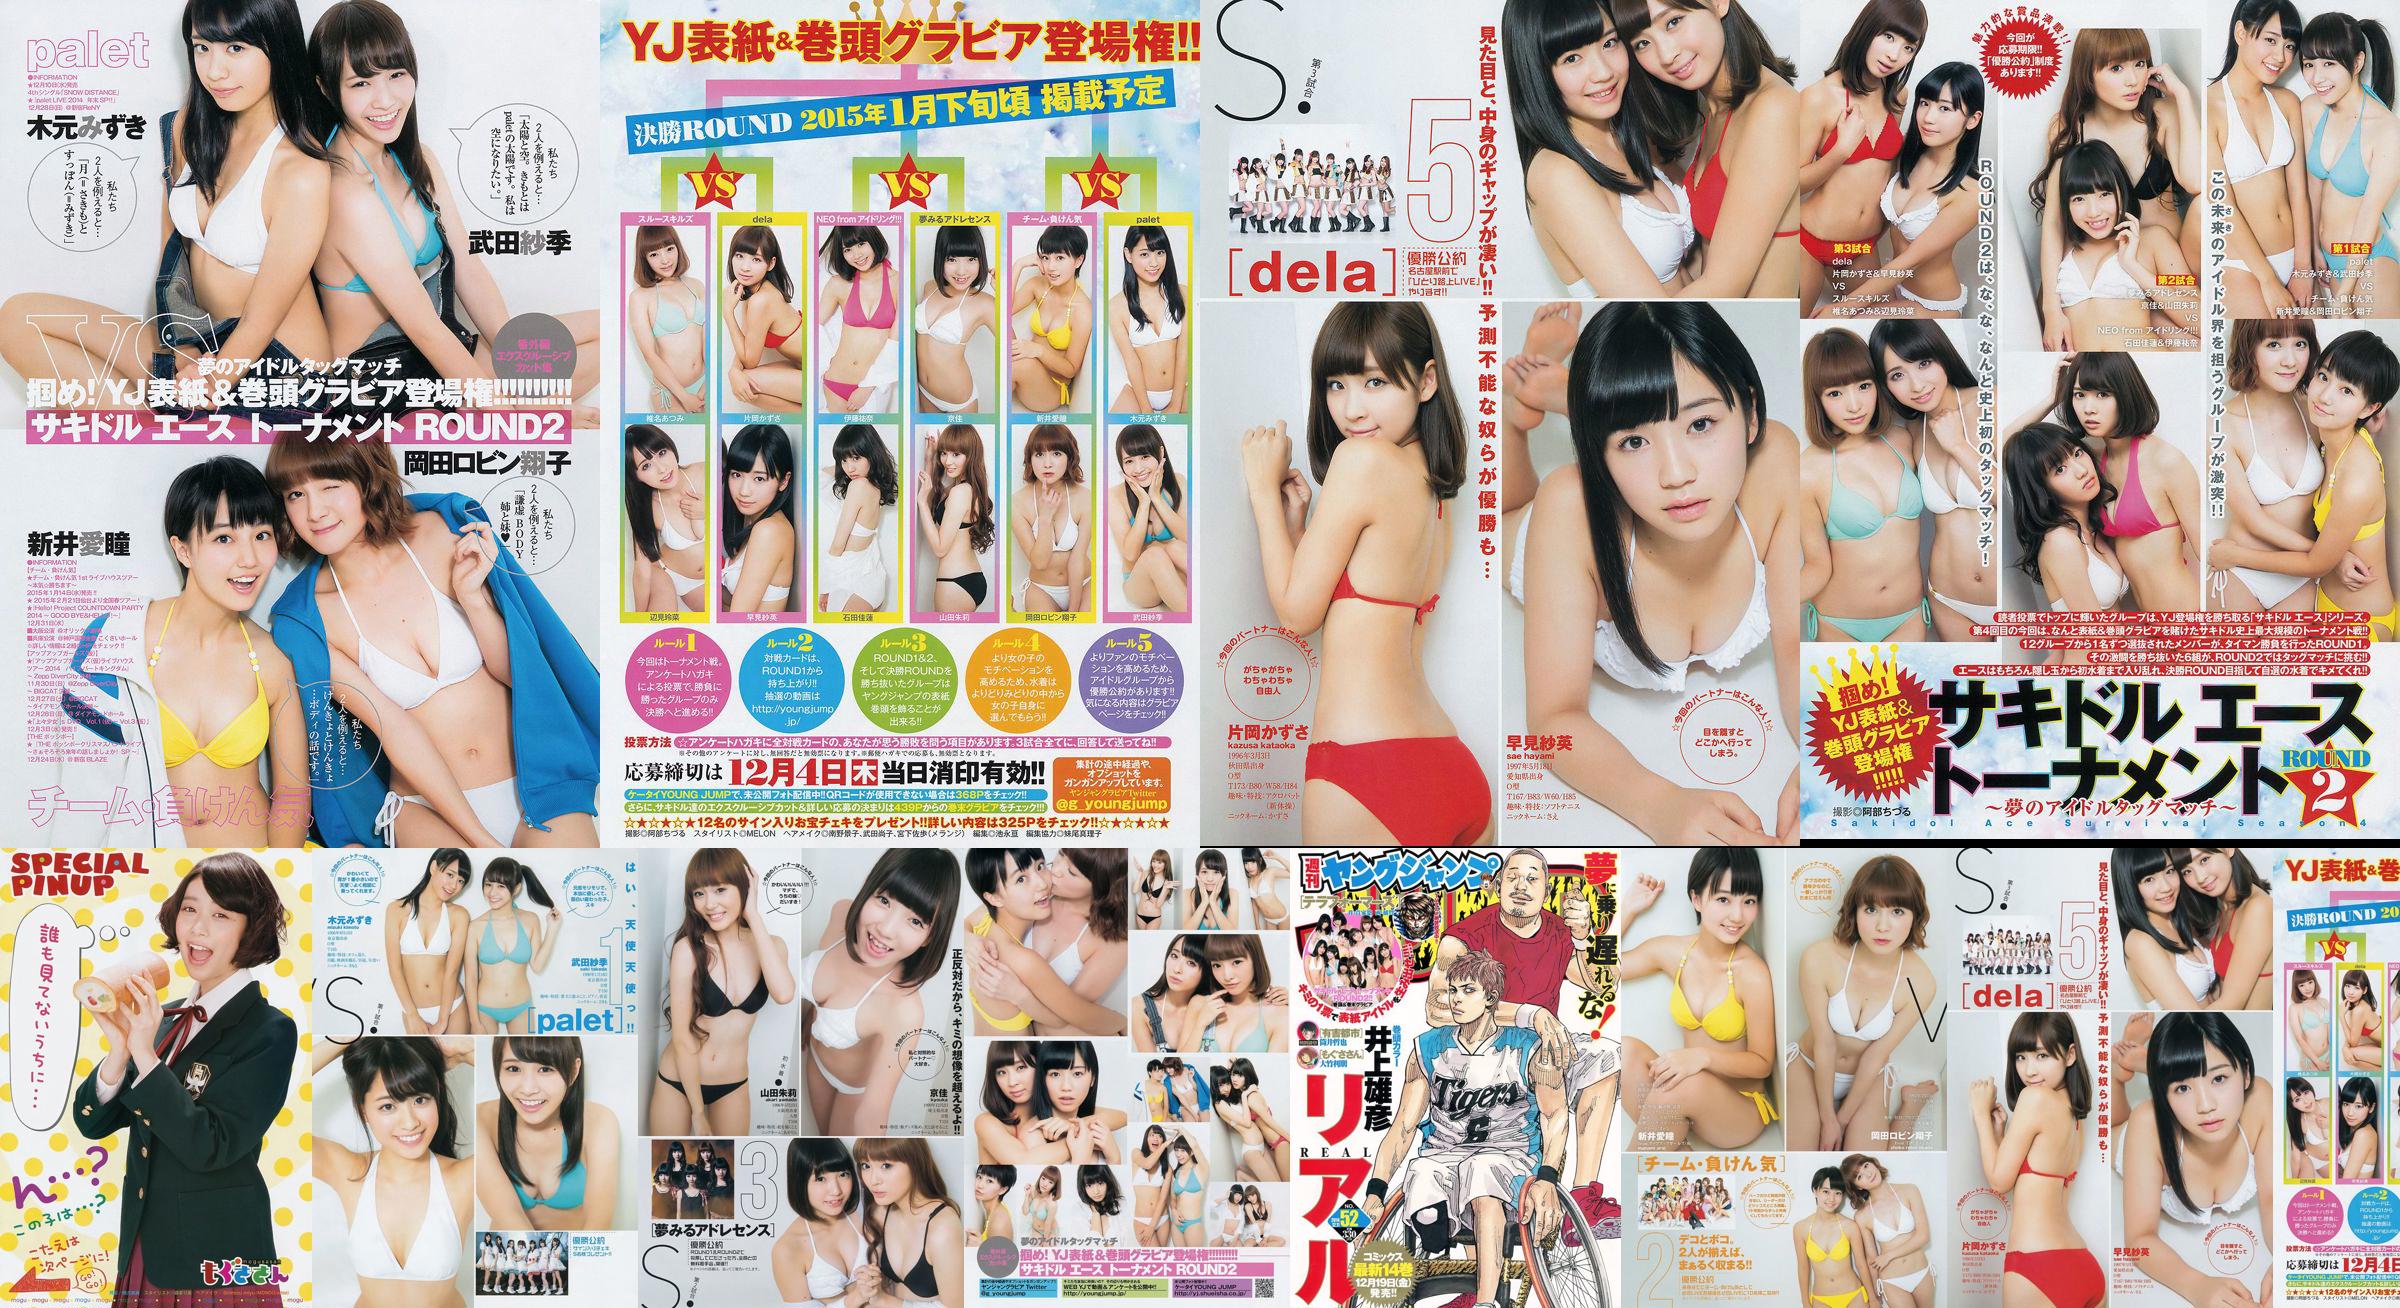 "ROUND2" [Weekly Young Jump] 2014 No.52 Photo Magazine No.20cc12 Pagina 1